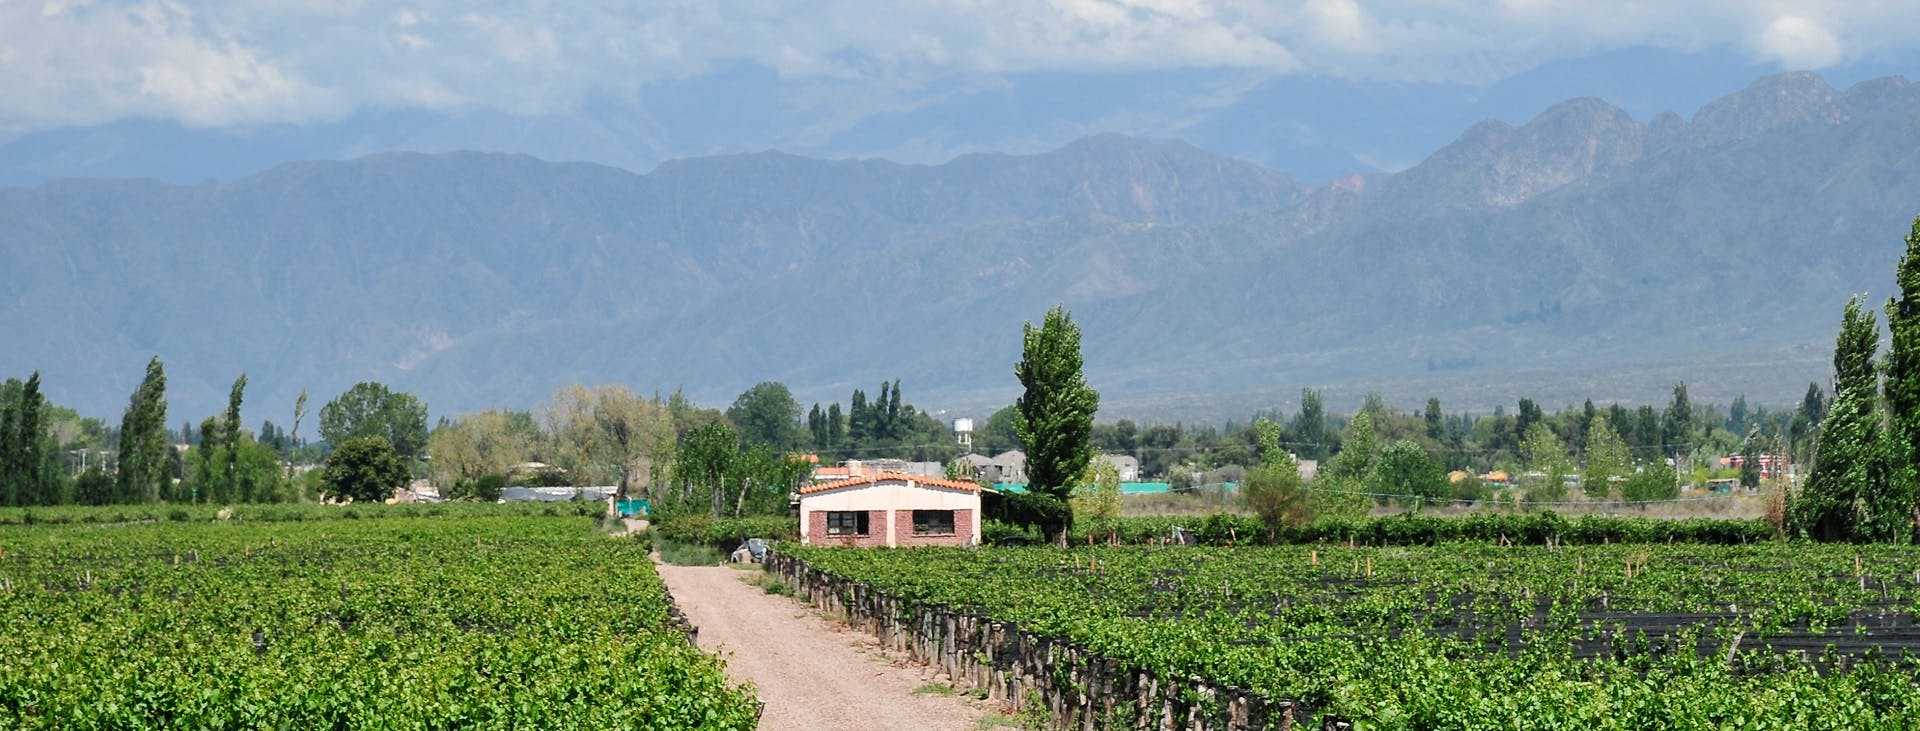 Ruta vinícola de medio día en Mendoza con cata de vinos